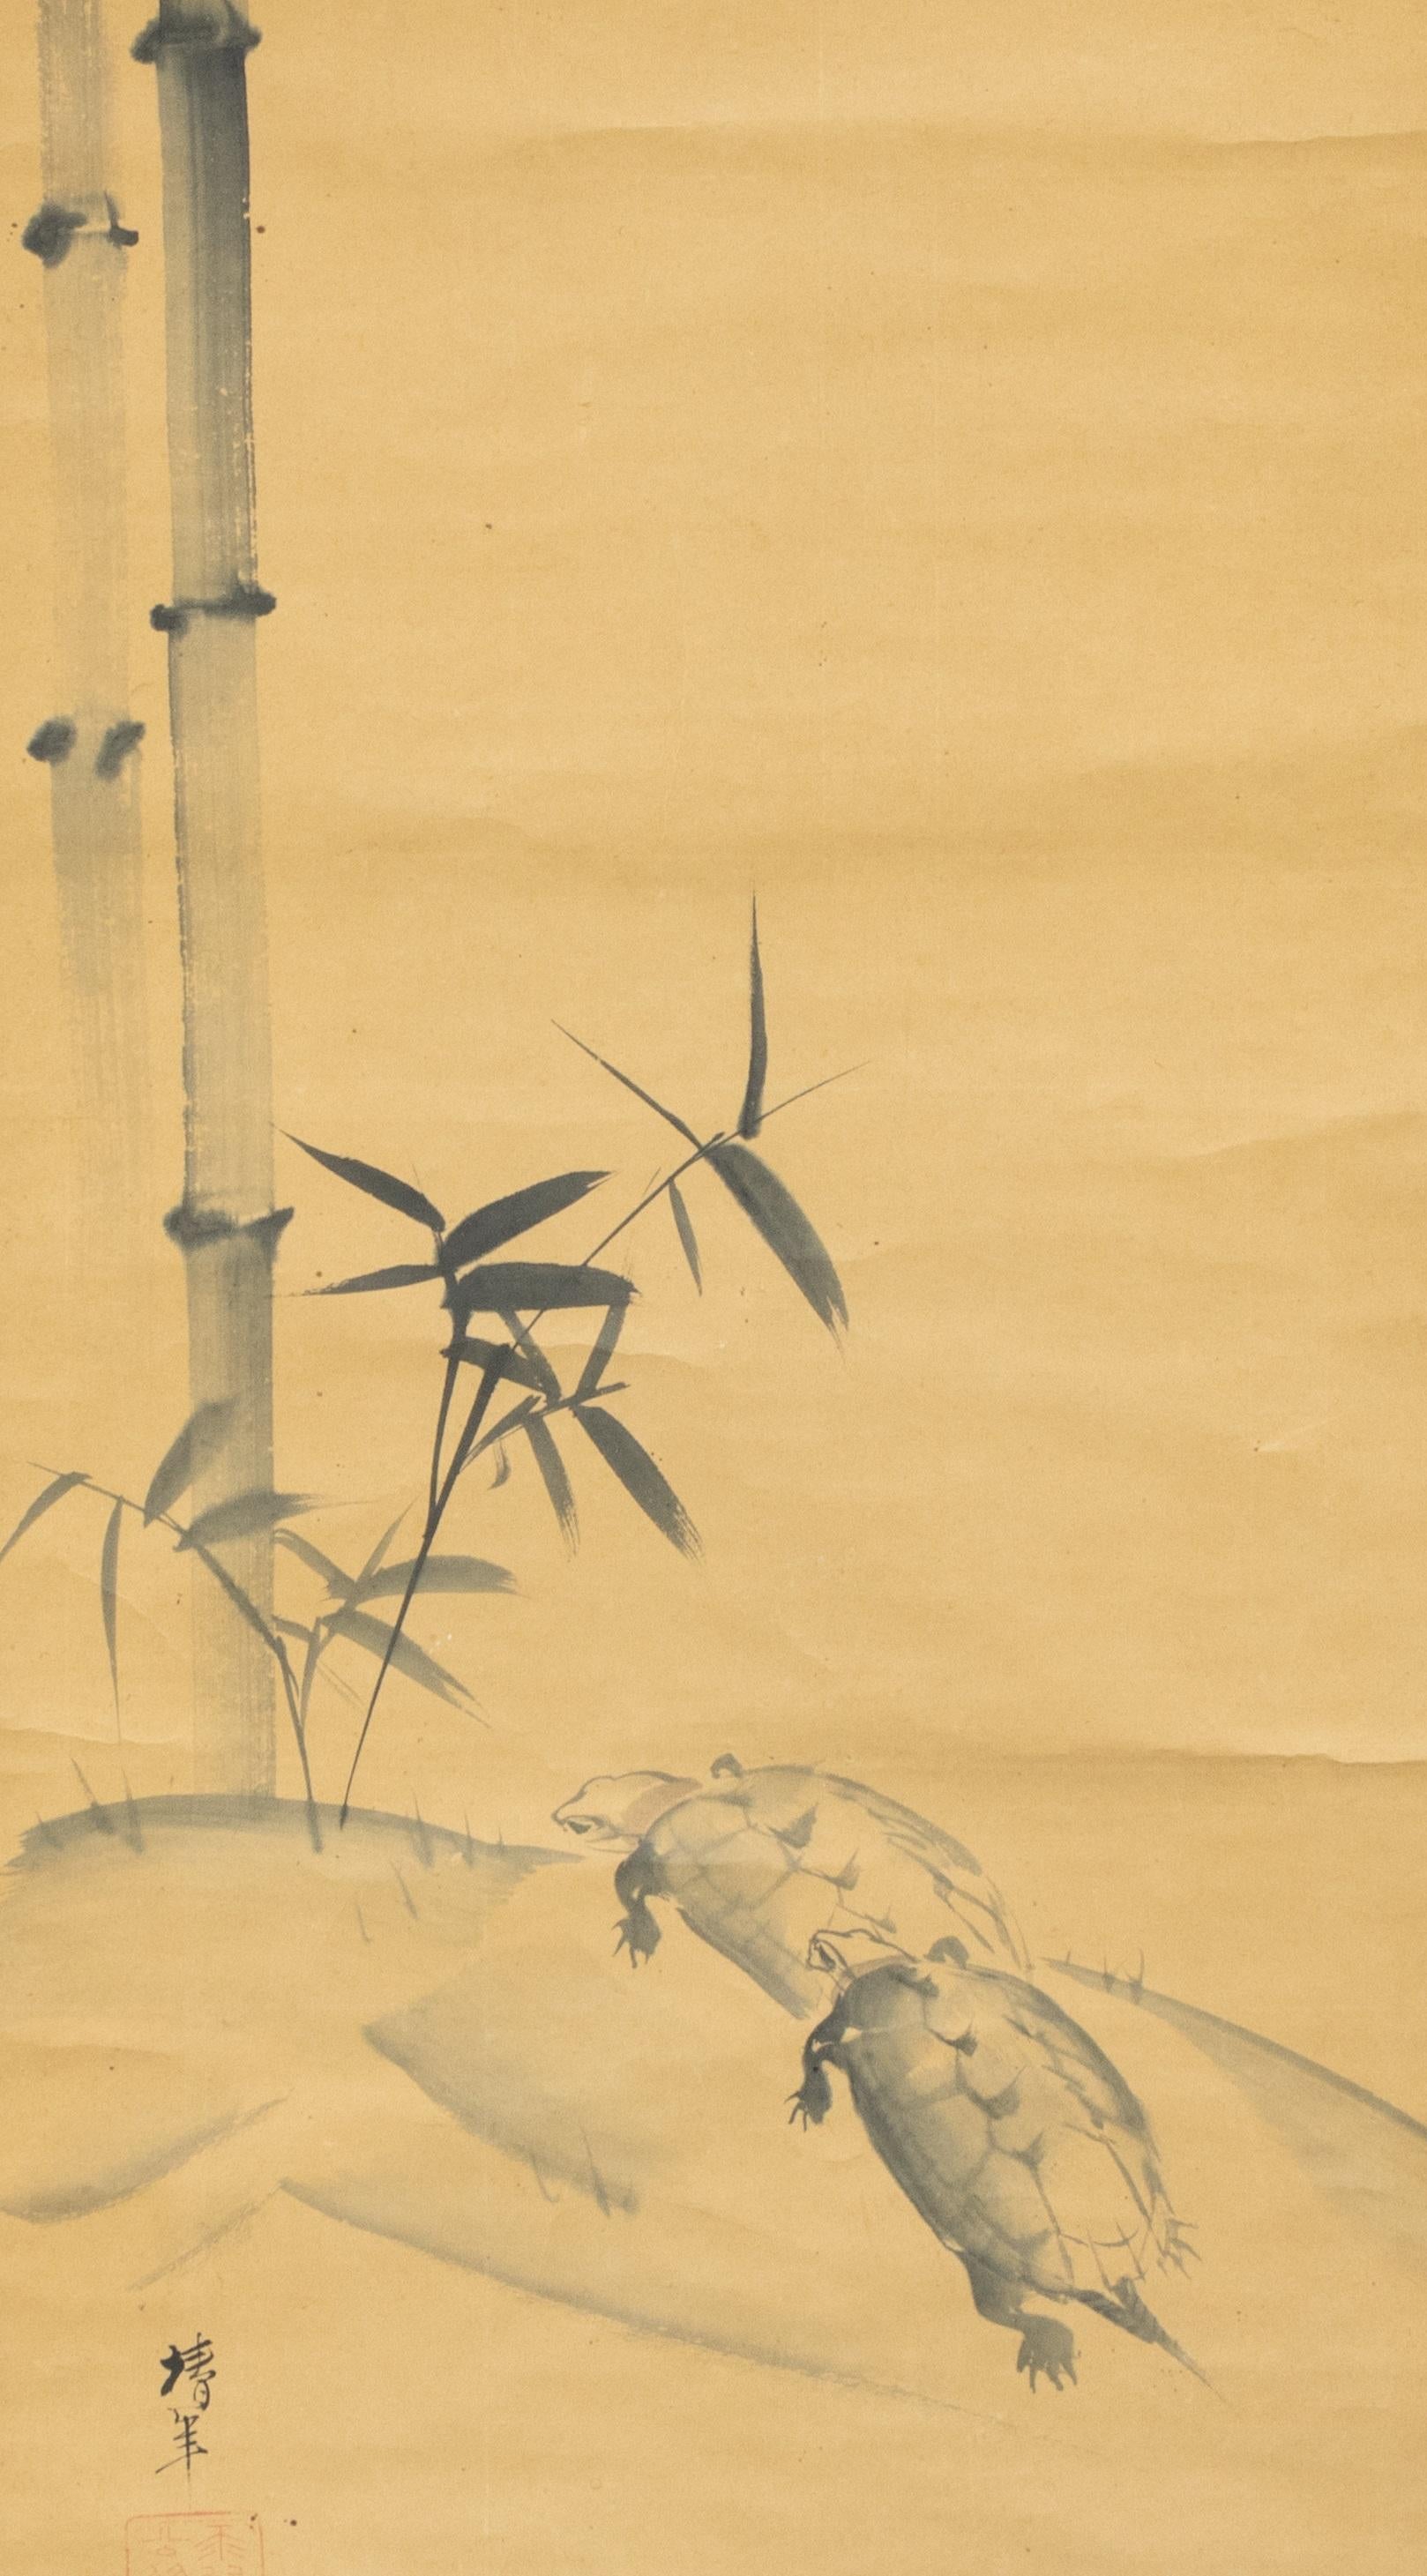 Ônishi Chinnen (1792 - 1851) Schilpadden en bamboo
Rolschildering / scroll op papier, benen rollers. B 125.7 x 48.9 / 179.5 x 59.5 cm
125.7 x 48.9 / 179.5 x 59.5 cm.